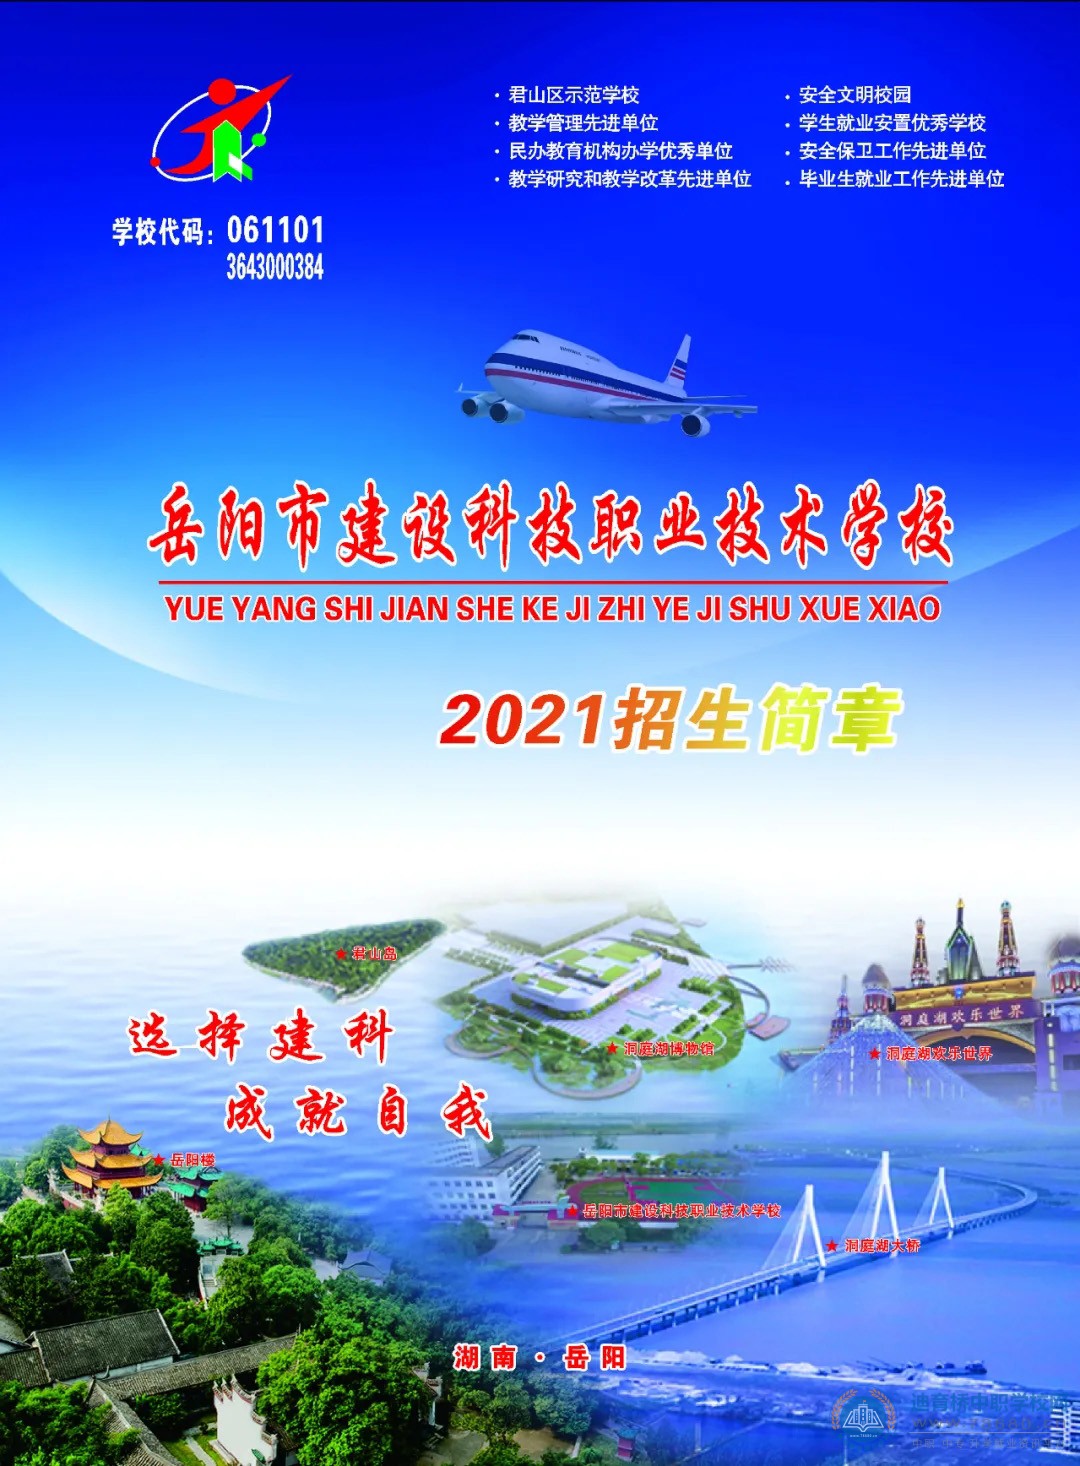 
岳阳市建设科技职业技术学校2021年招生简章